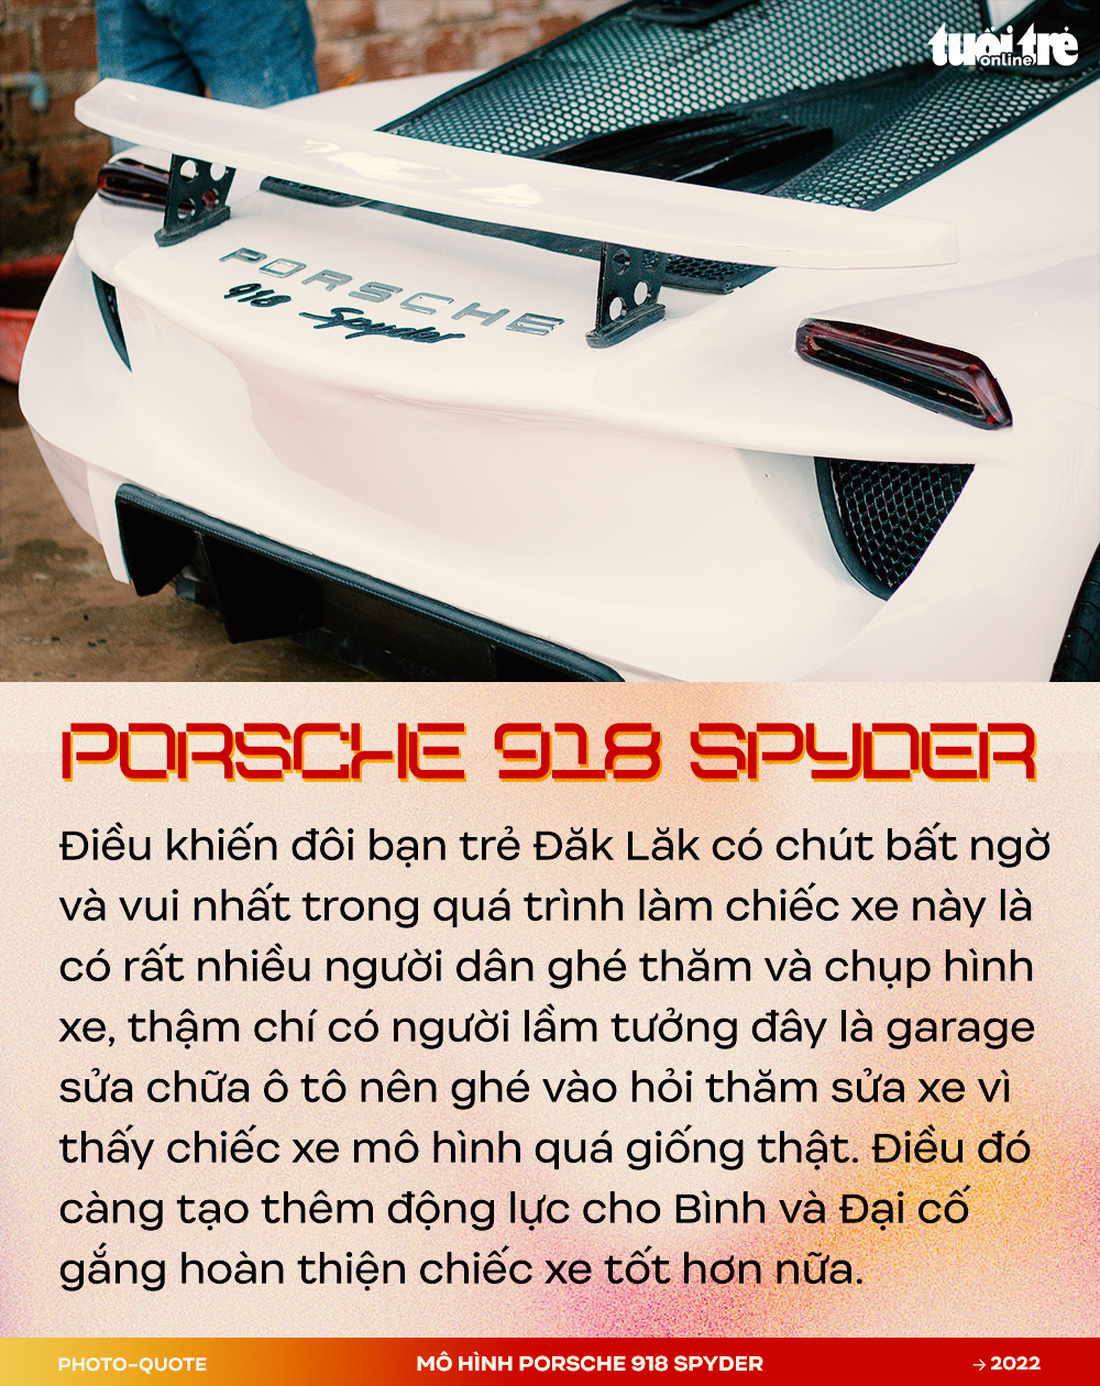 Đôi bạn 9X Tây Nguyên làm mô hình Porsche 918 Spyder gây sốt cộng đồng quốc tế - Ảnh 7.